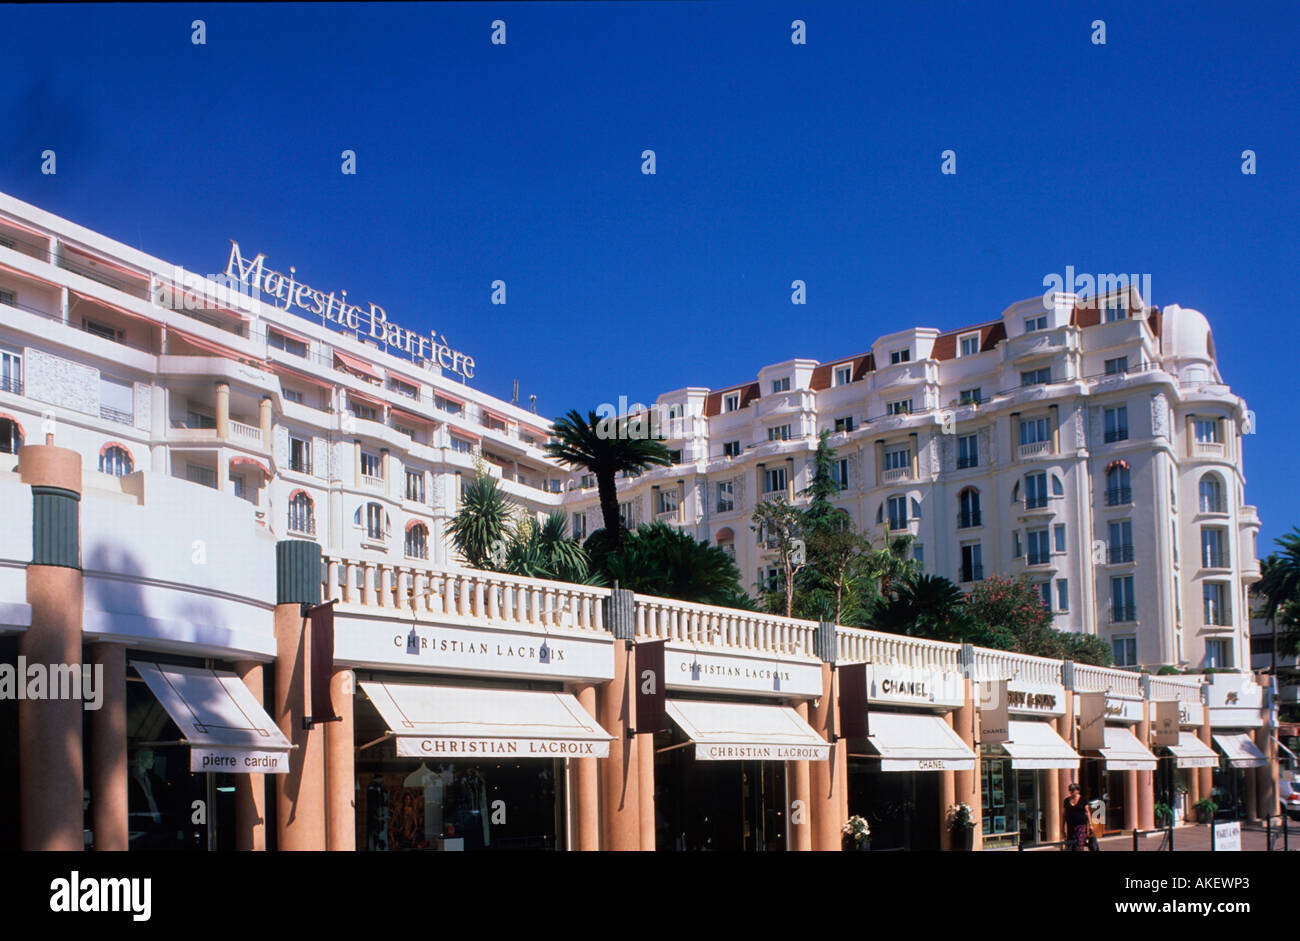 Frankreich, Cote d Azur, Cannes, l'Hotel Majestic Barrière am Boulevard de la Croisette Foto Stock